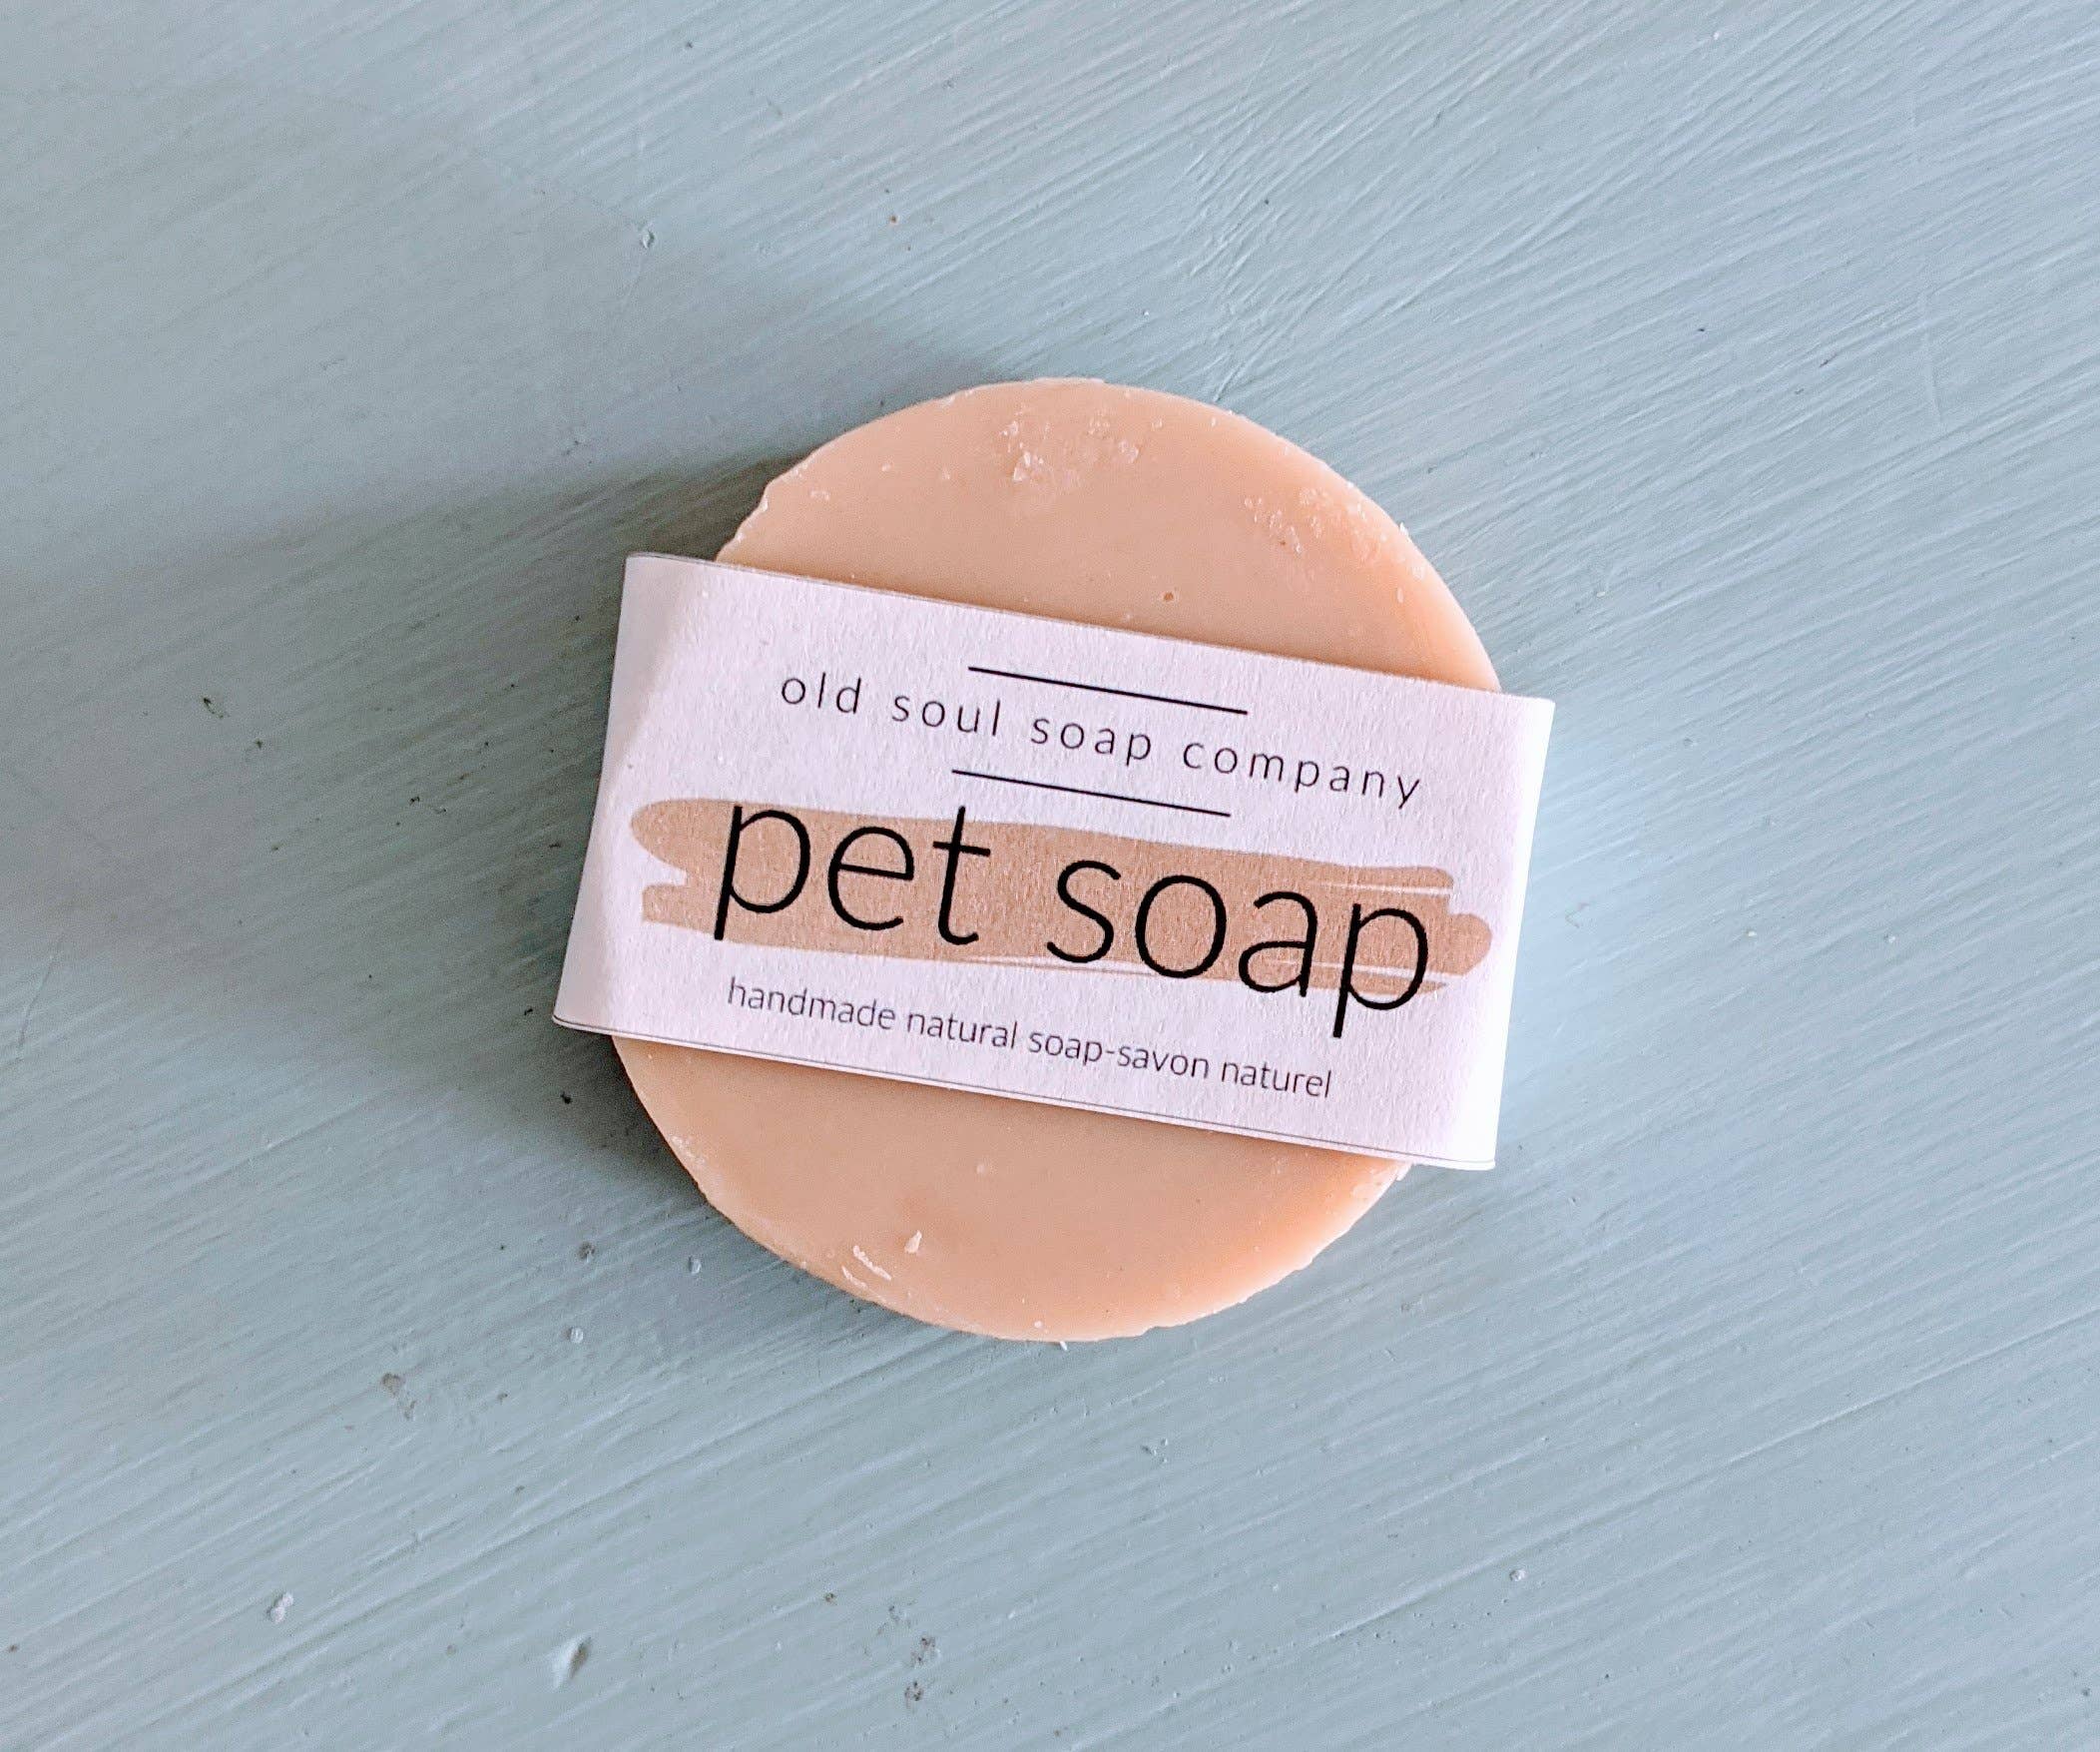 Old Soul Soap Co. Pet Soap